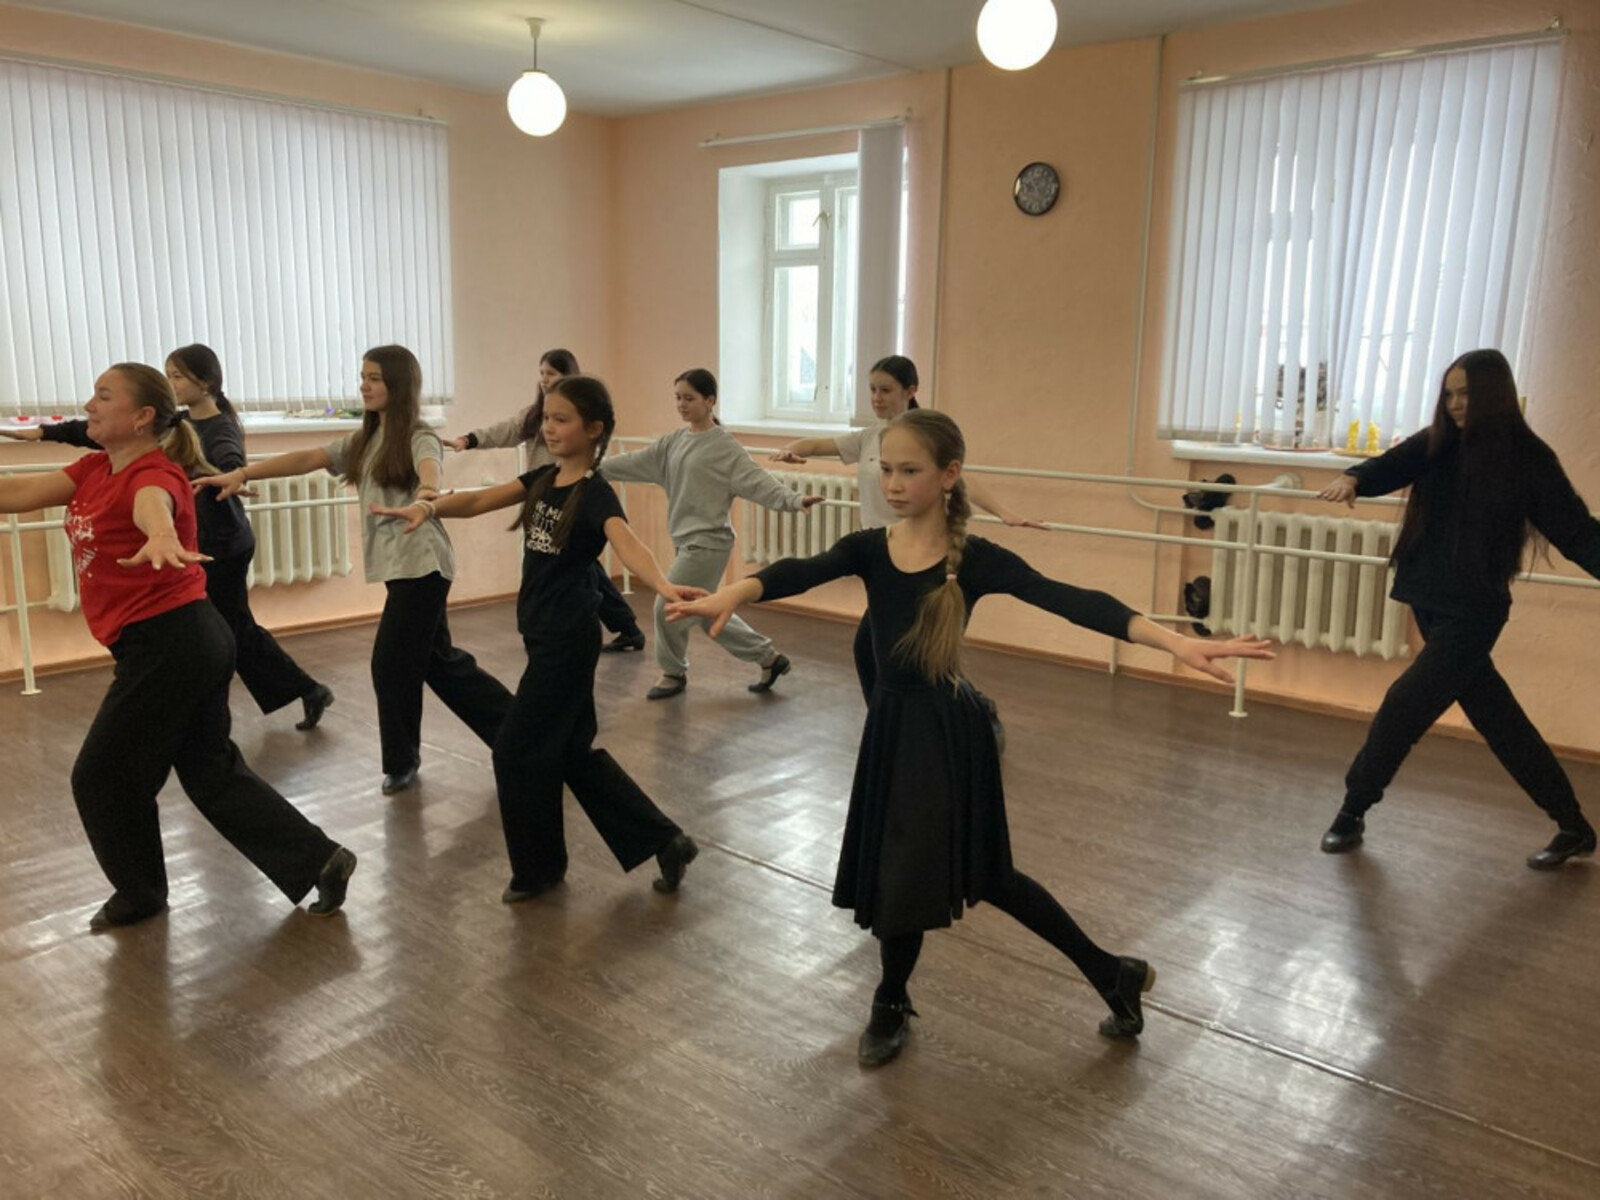 Благодаря нацпроекту молодежь Краснокамского района повышает свой культурный уровень